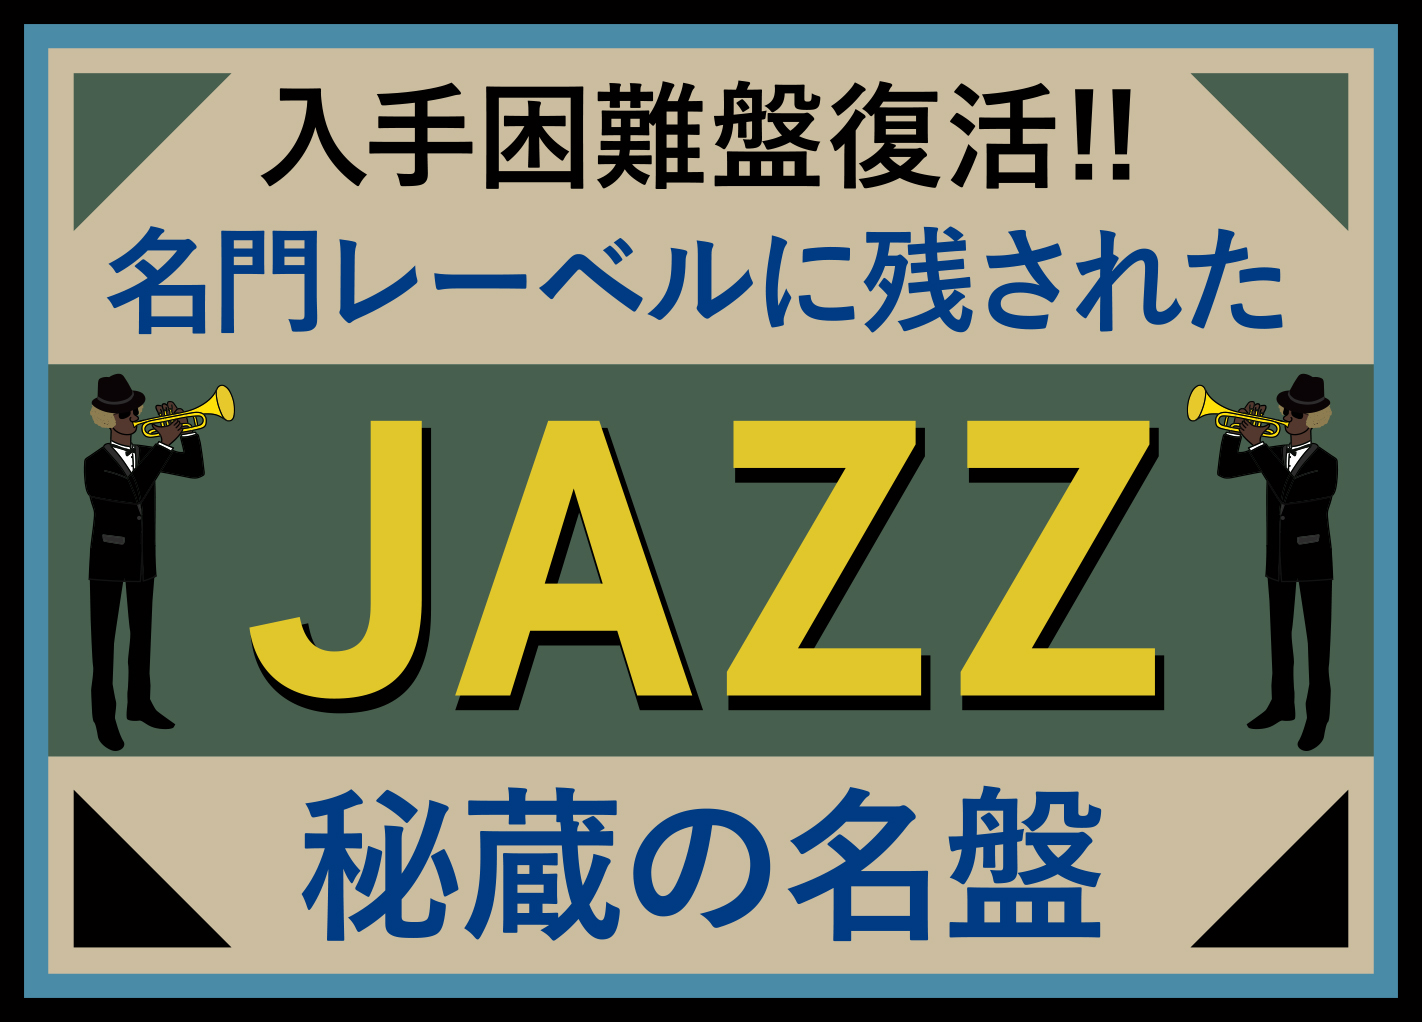 ジャズ秘蔵の名盤 - ジャズ | JAZZ